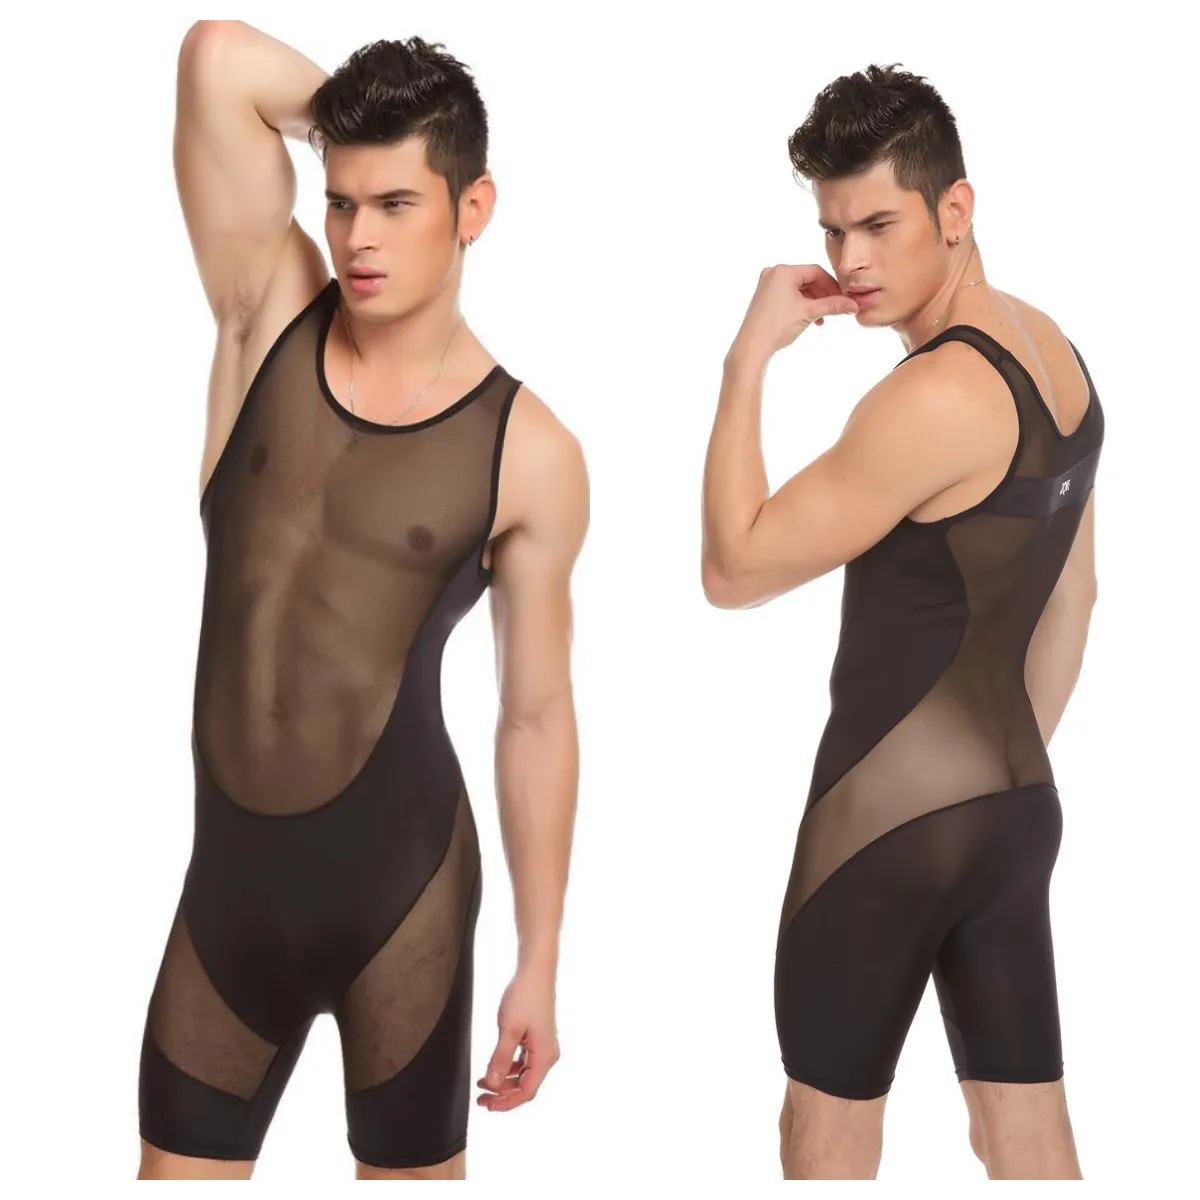 JQK marque Sexy sous-vêtements Body hommes Body costume transparent voir à travers pure Gay hommes sous-vêtements porter